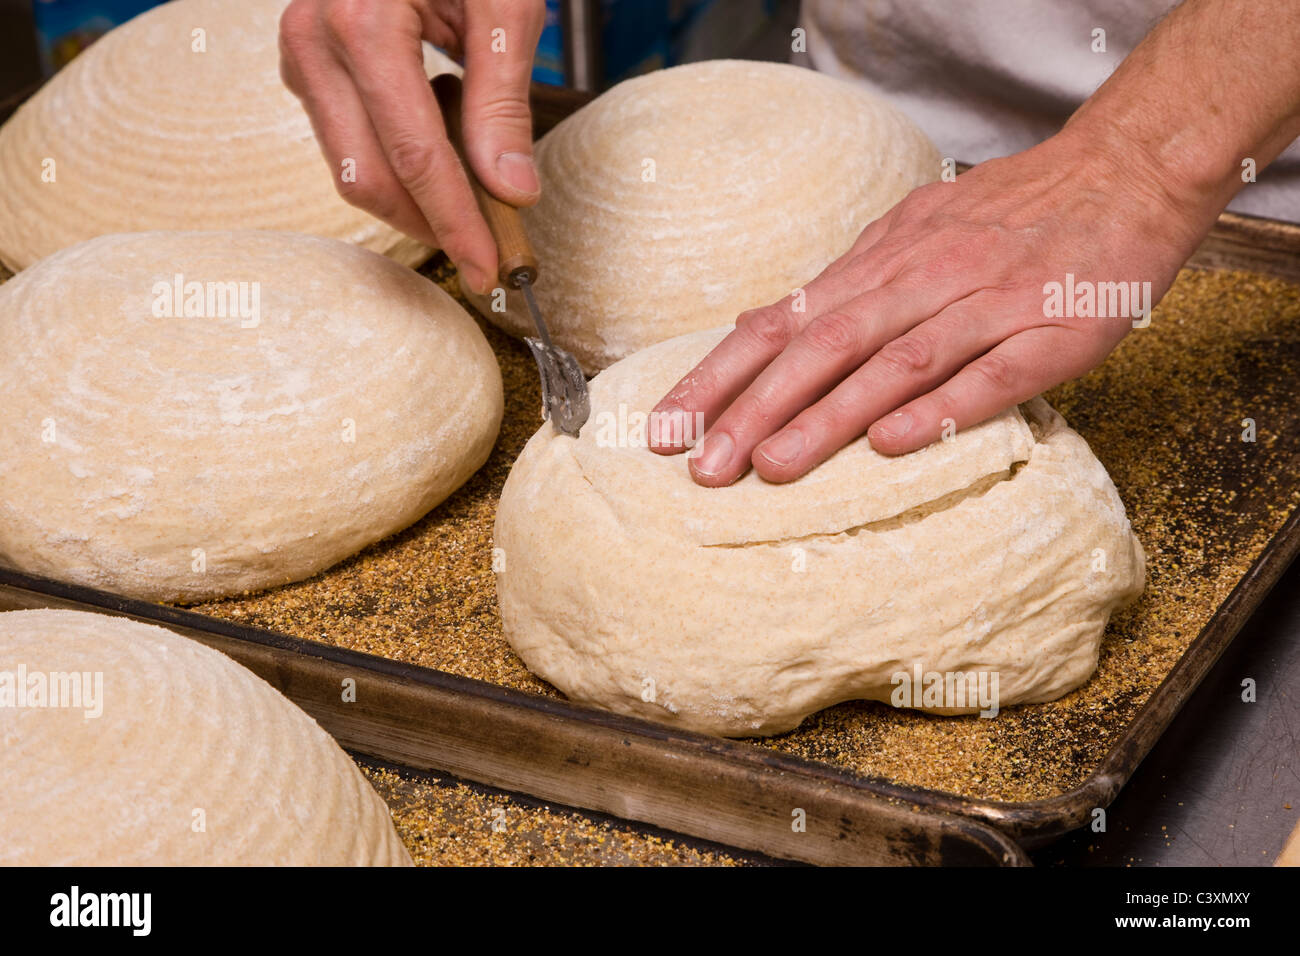 Cuisinier professionnel la préparation du pain frais dans une boulangerie commerciale Banque D'Images